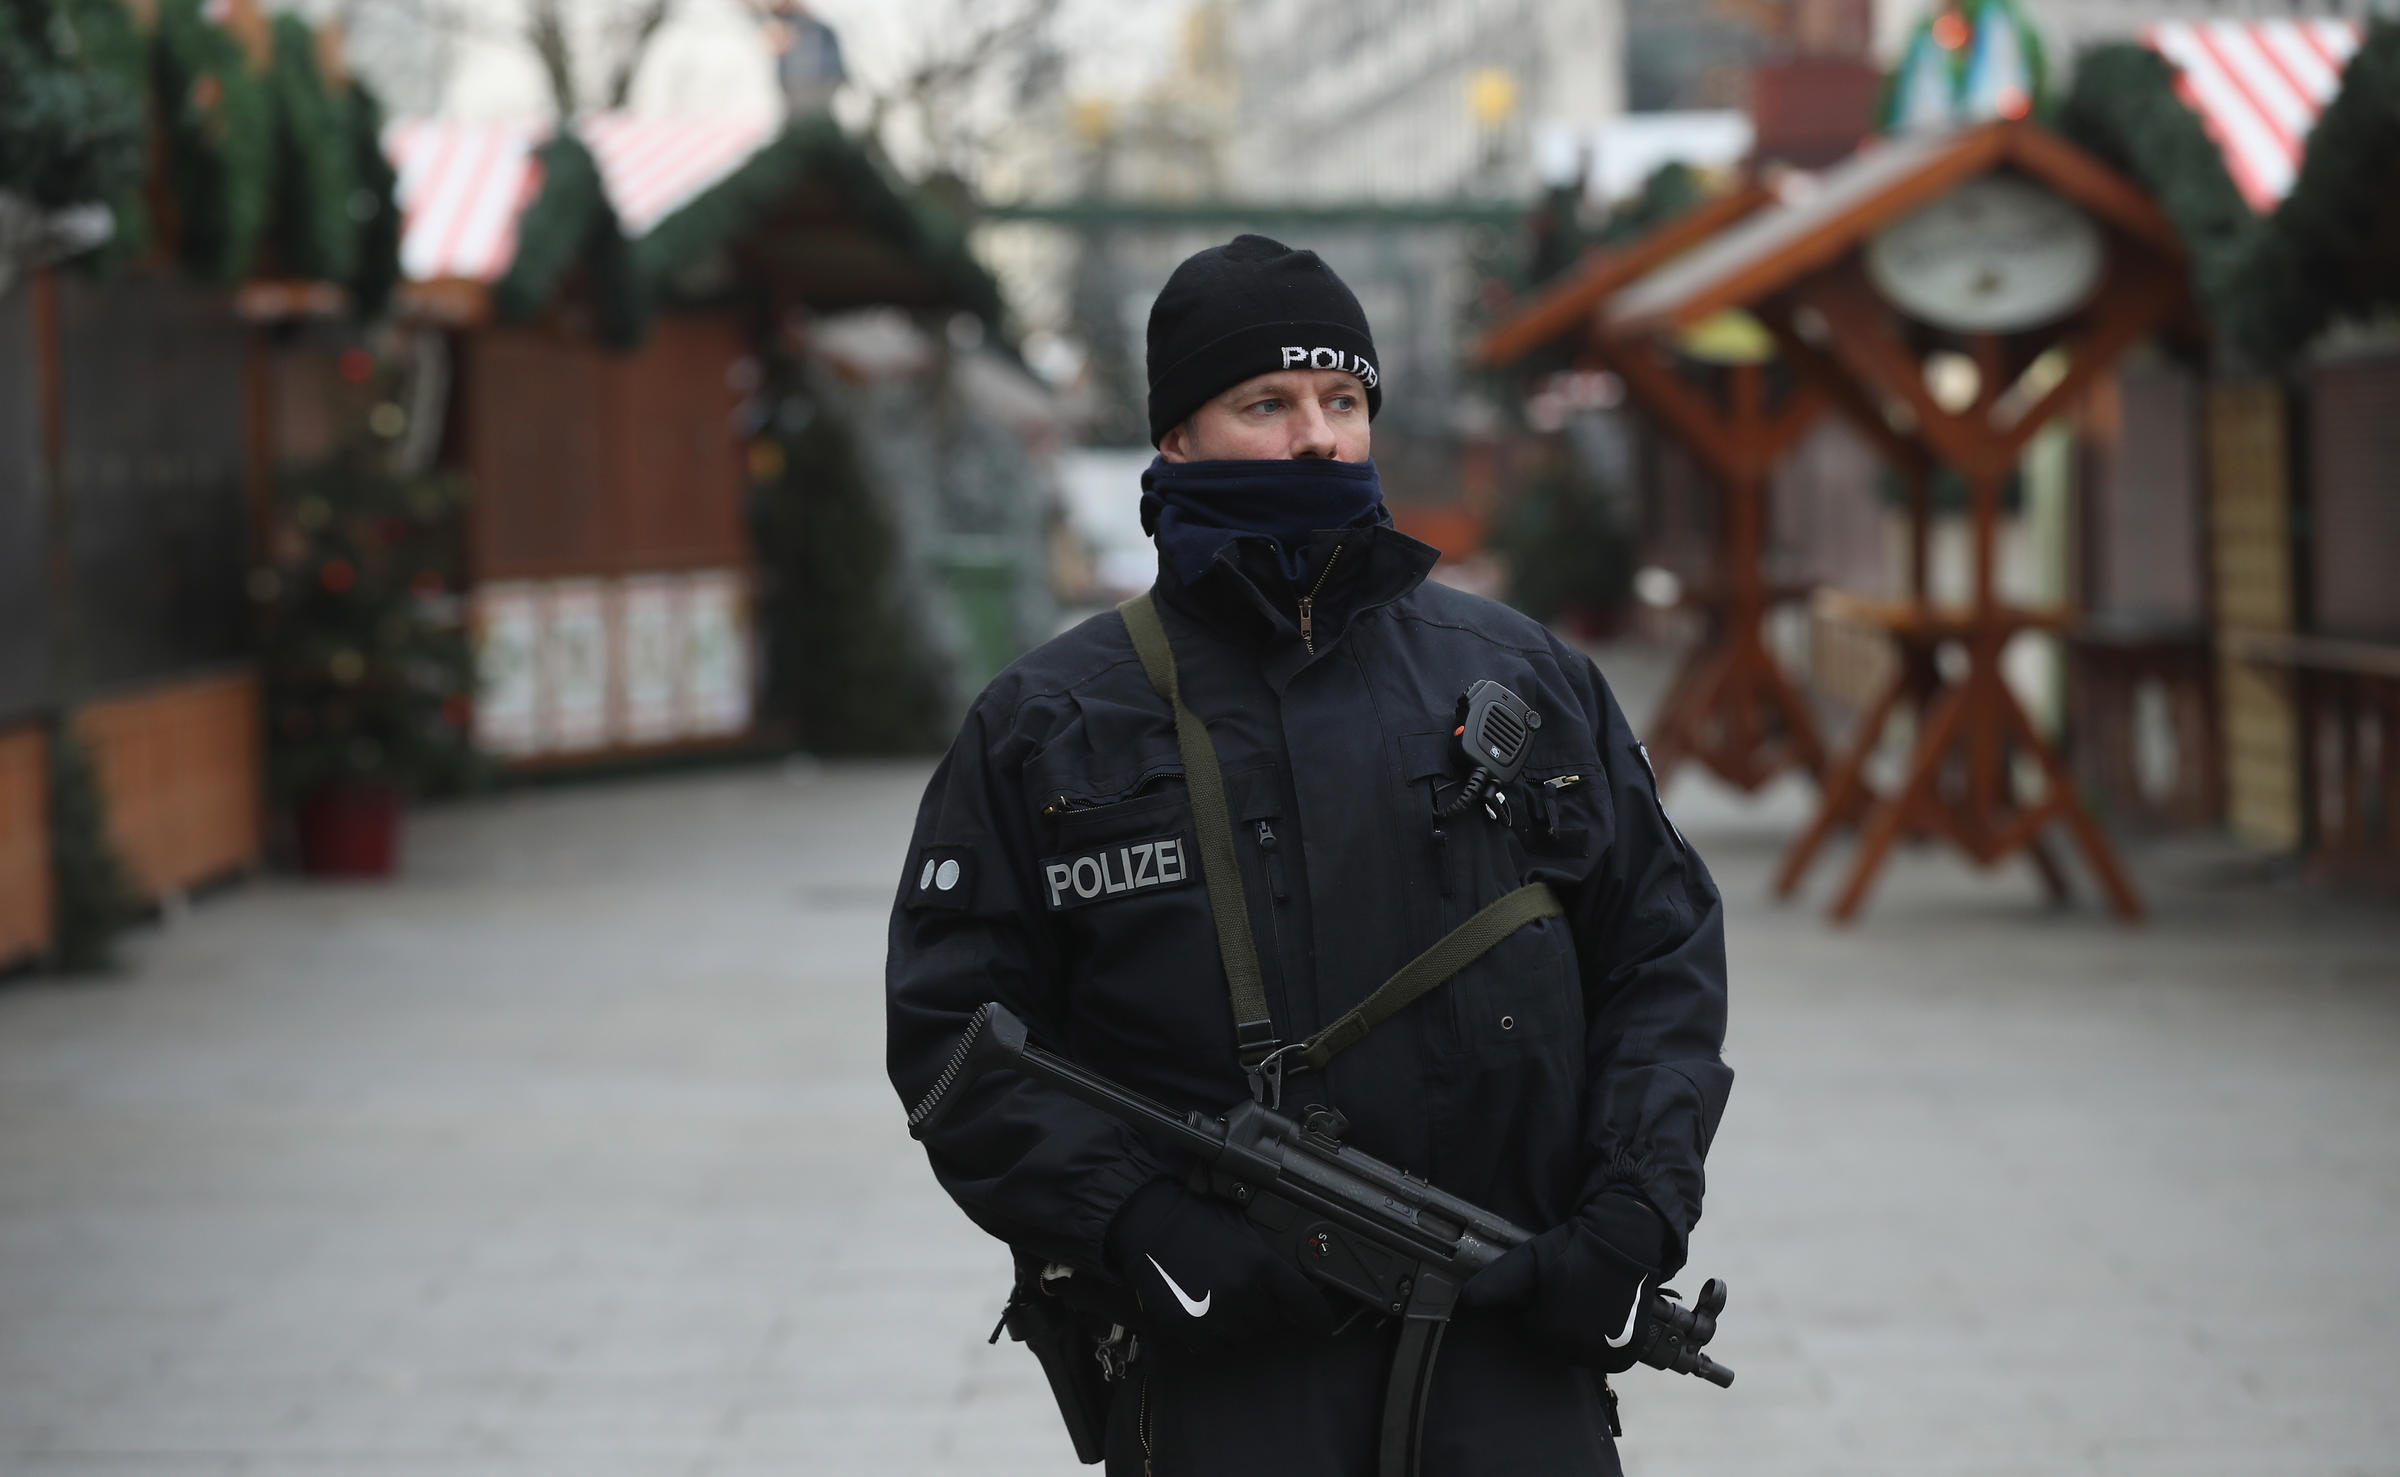 Η Europol είχε προειδοποιήσει για “χτύπημα” μέσα στα Χριστούγεννα